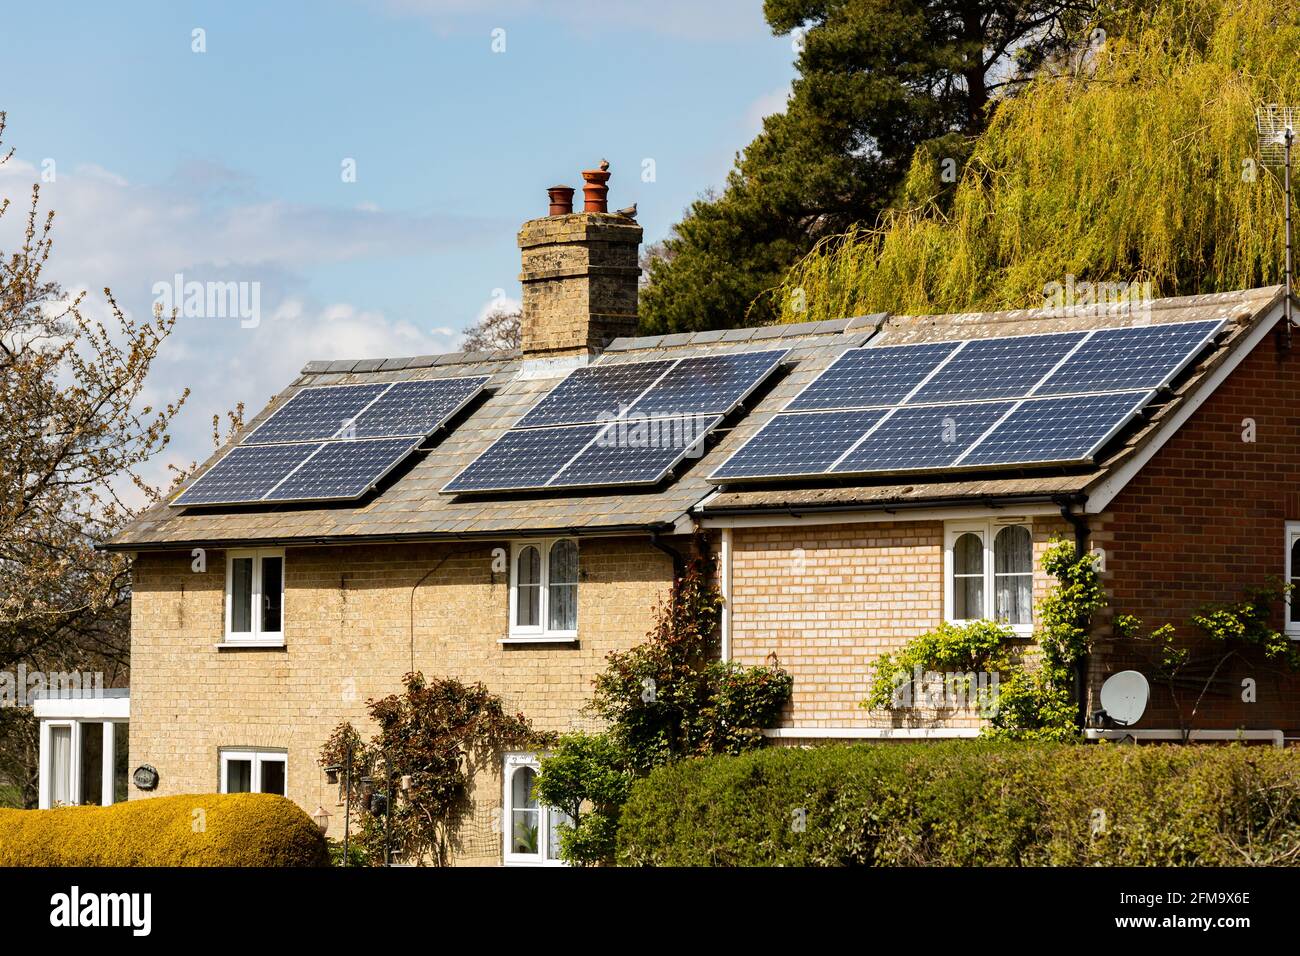 Woodbridge, Suffolk, Großbritannien Mai 01 2021: Ein Landhaus, in dem Solarzellen auf dem Dach installiert wurden, um saubere grüne erneuerbare Energie zu erzeugen Stockfoto